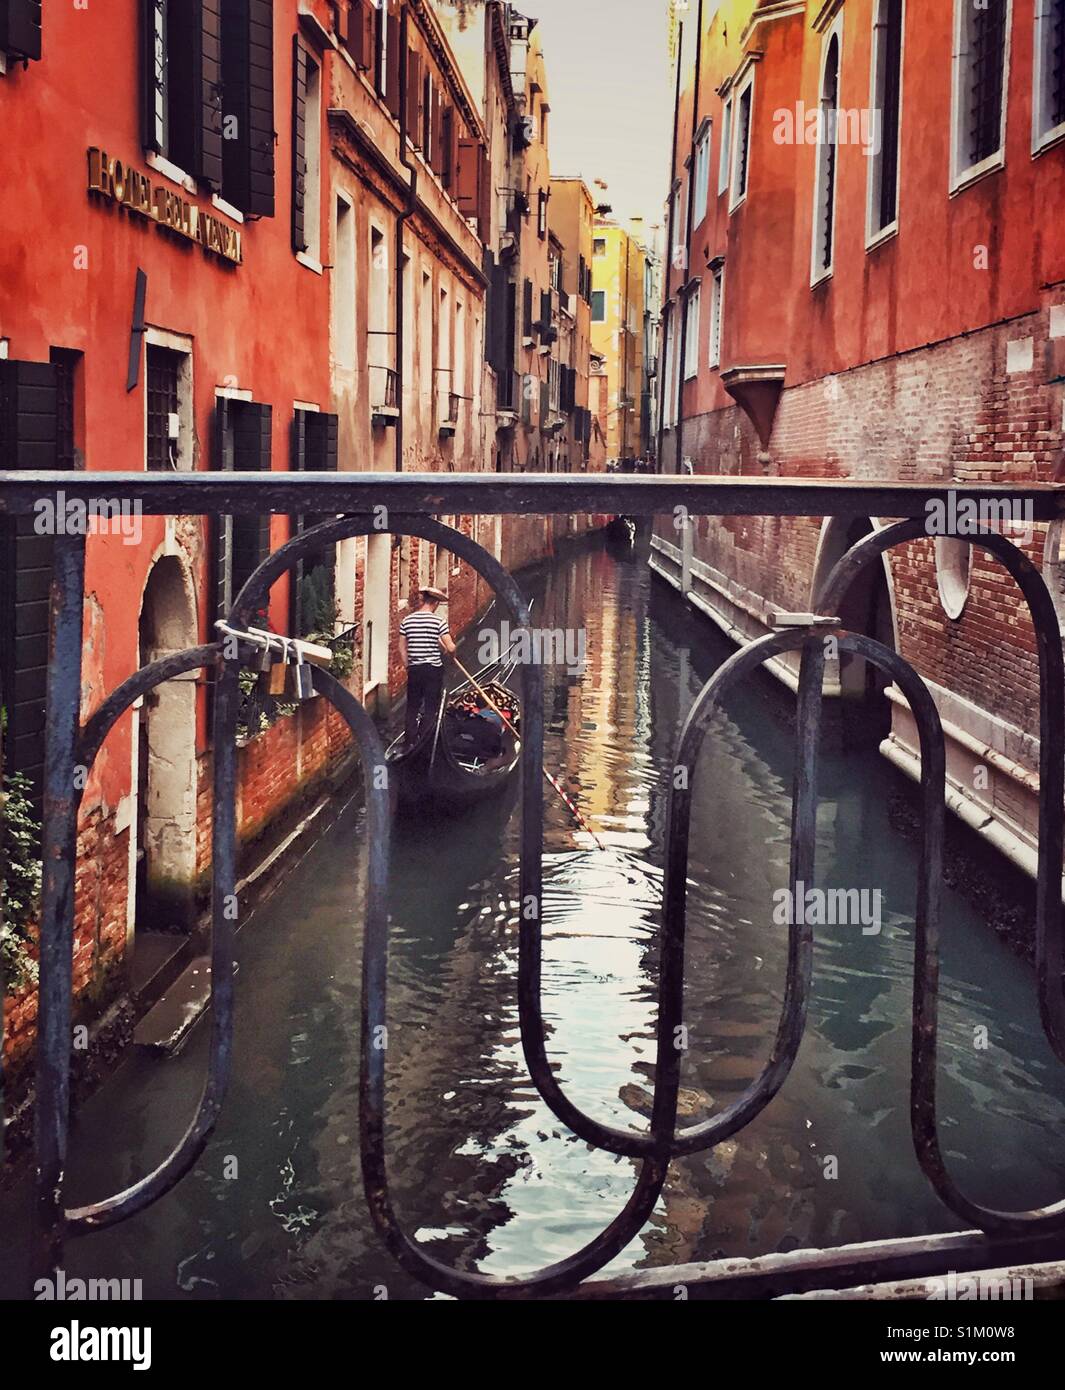 Gondola on narrow canal in Venice, Italy. Stock Photo